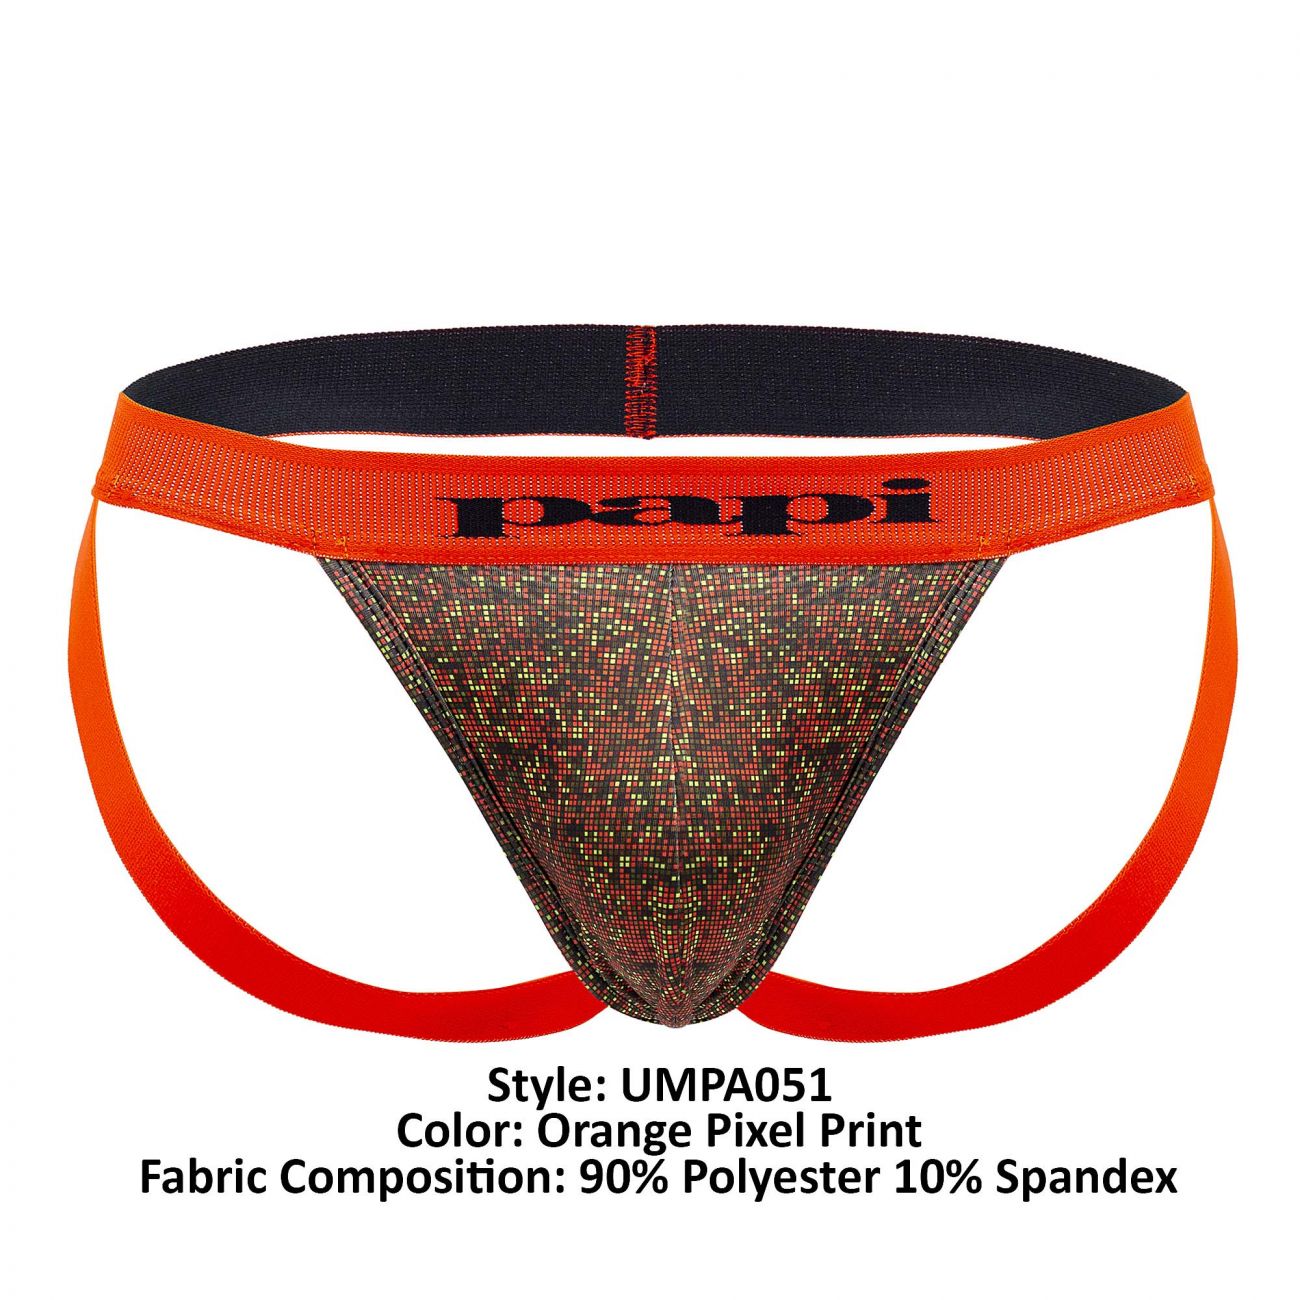 Papi UMPA051 Fashion Microflex Brazilian Jockstrap Color Orange Pixel Print